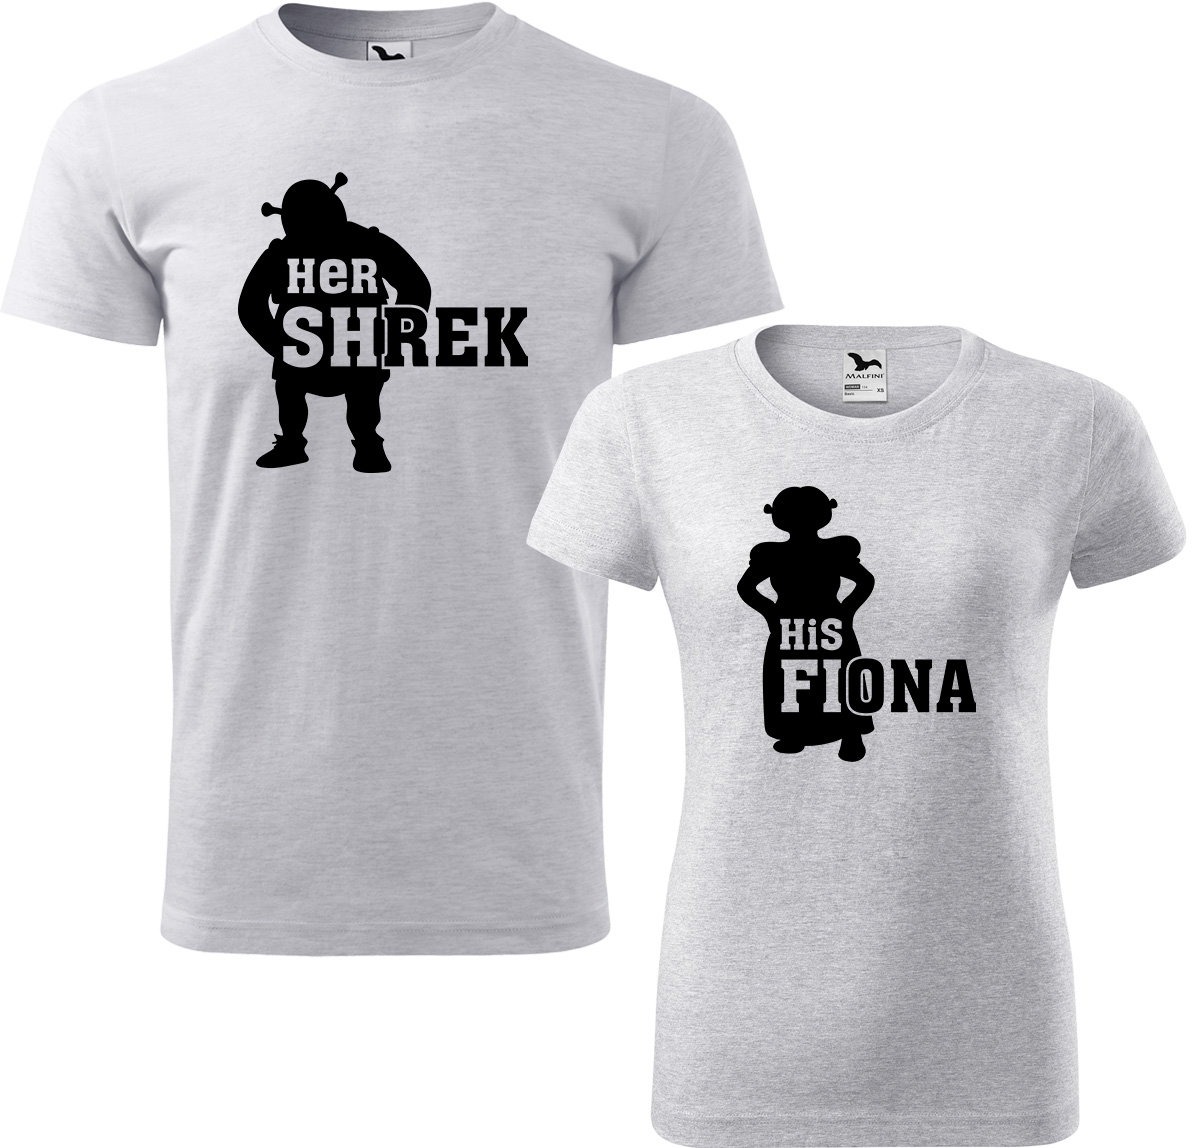 Trička pro páry - Shrek a Fiona Barva: Světle šedý melír (03), Velikost dámské tričko: S, Velikost pánské tričko: M